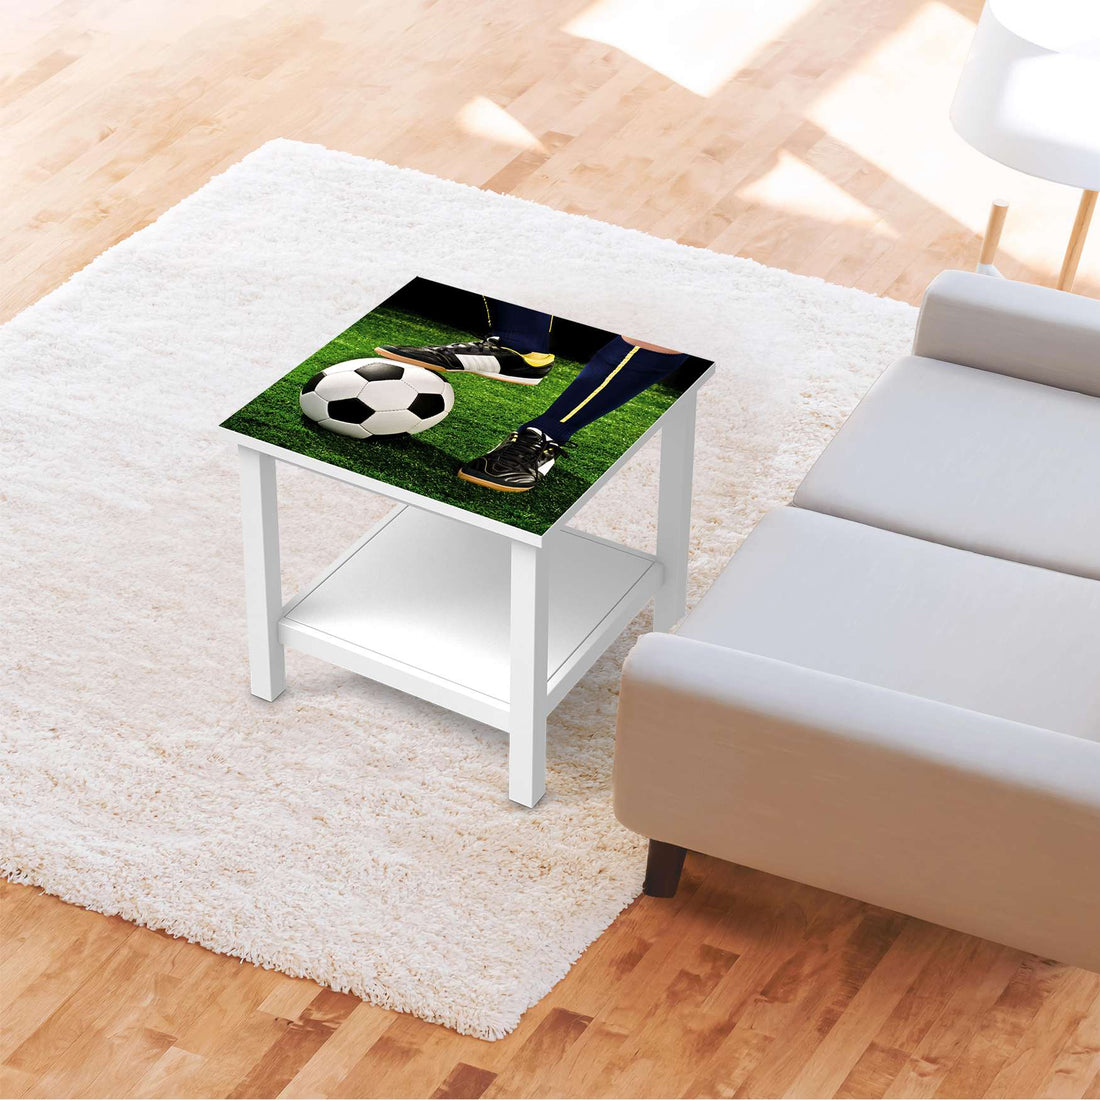 Möbel Klebefolie Fussballstar - IKEA Hemnes Beistelltisch 55x55 cm - Kinderzimmer